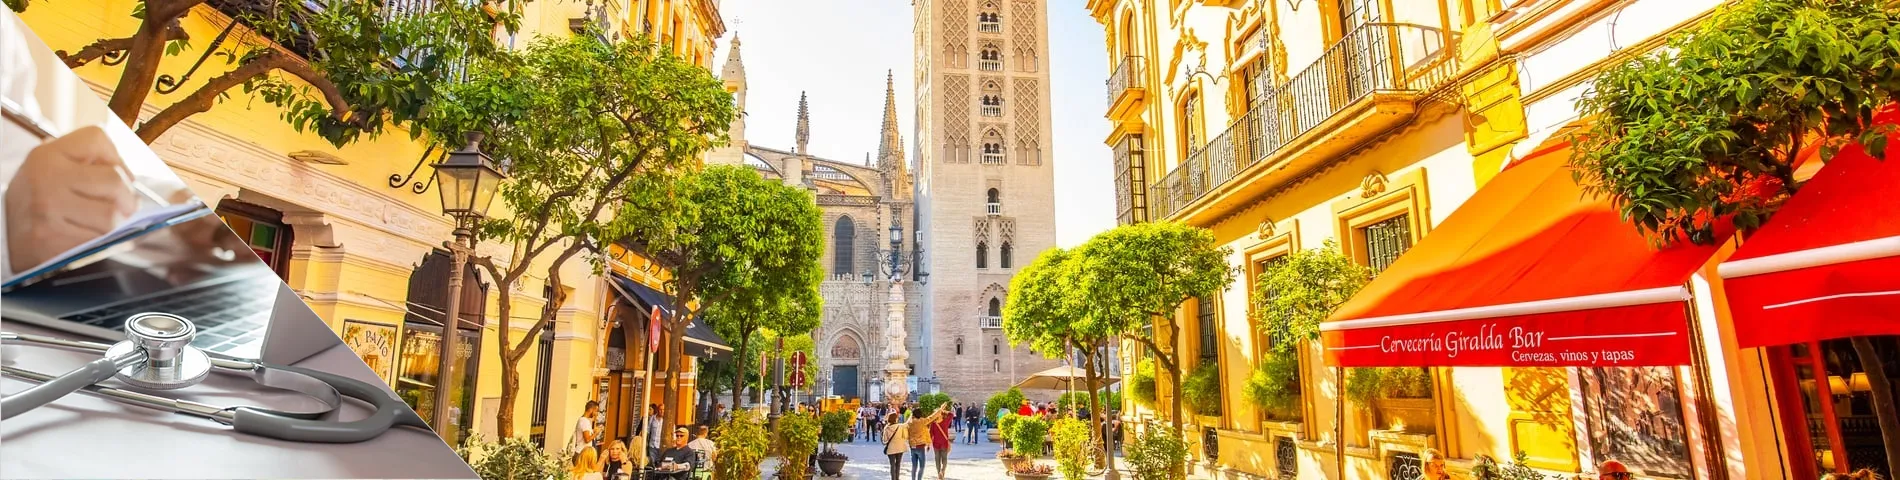 Sevilla - Spanyol Egészségügyi